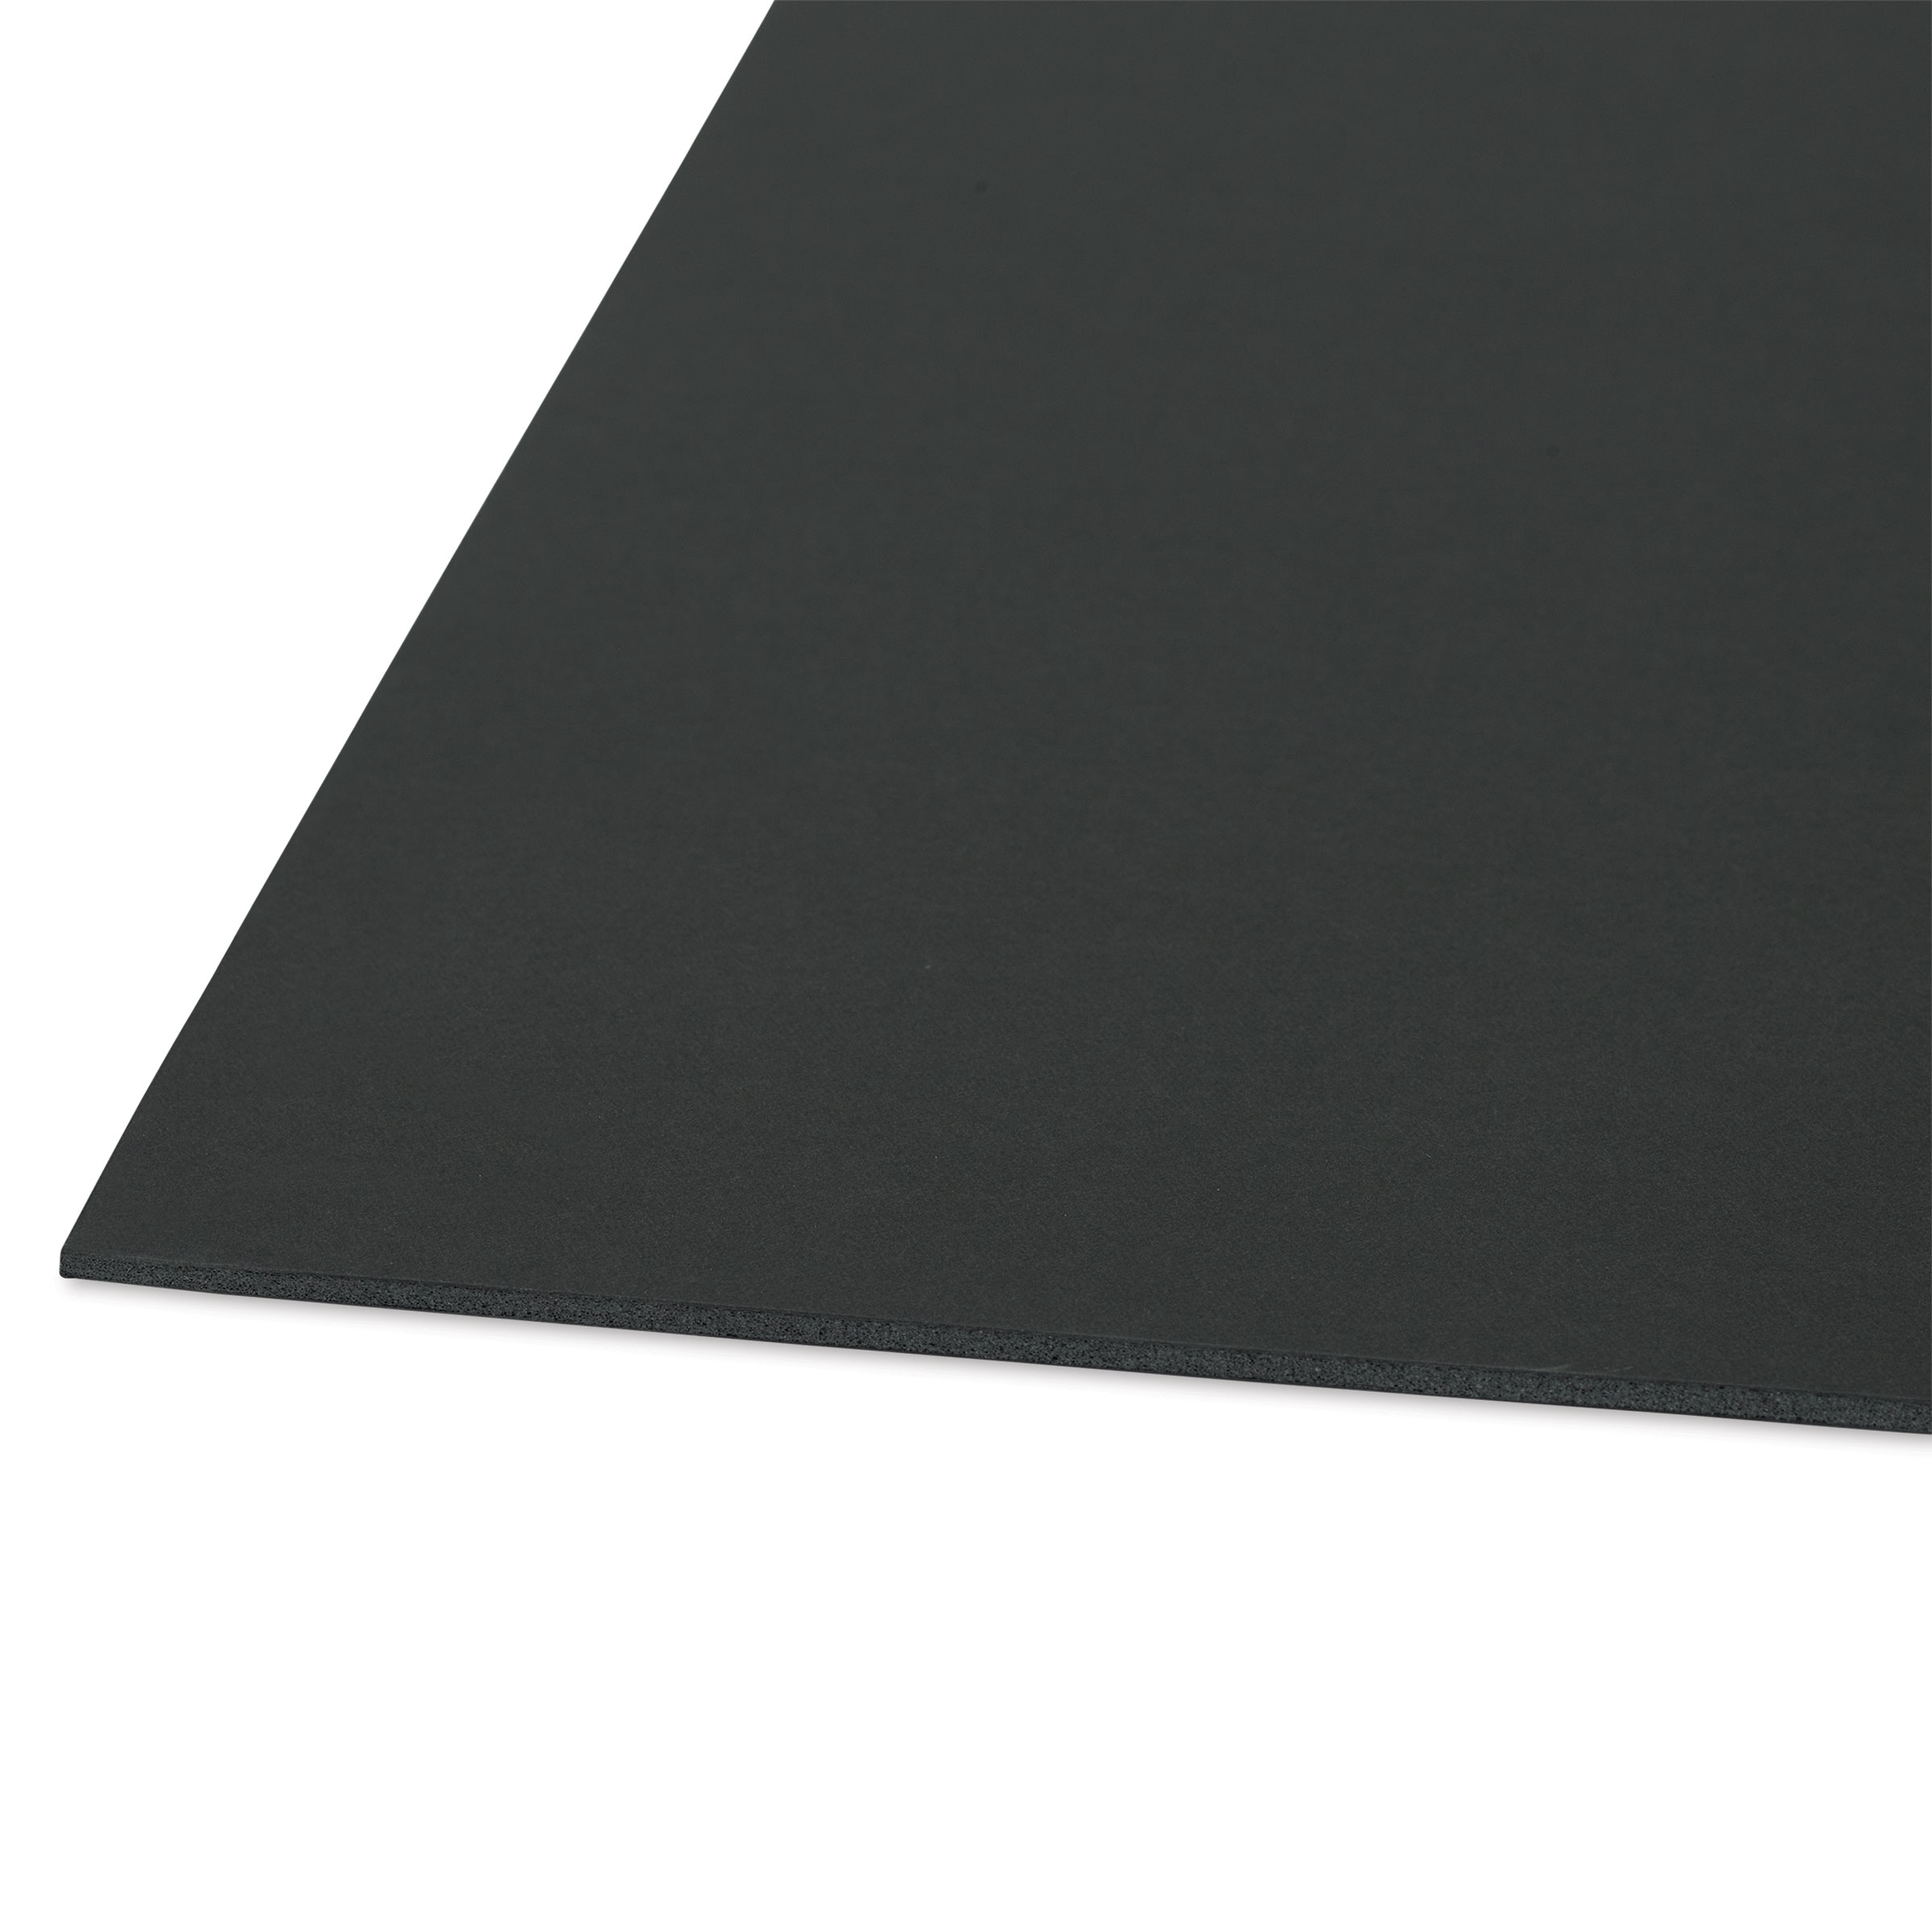 3/16 Black Buffered Foam Core Boards :24x36